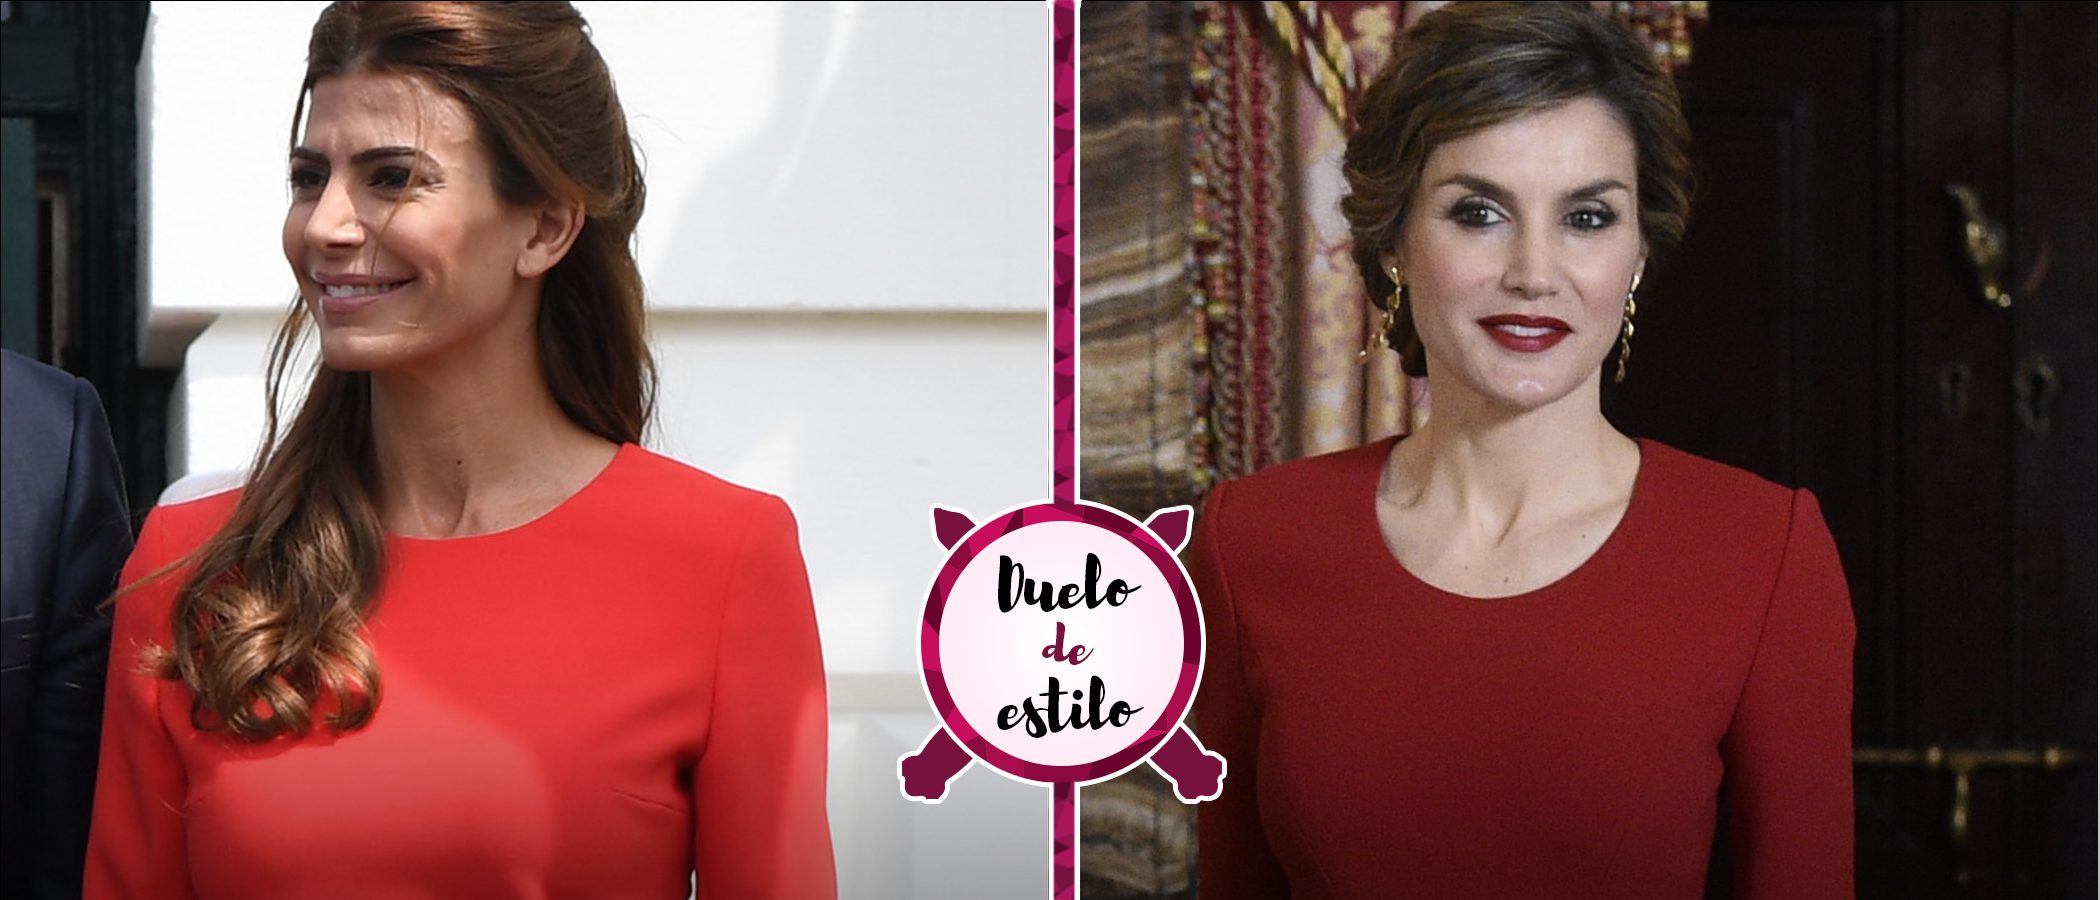 Juliana Awada y la Reina Letizia coinciden con un look muy similar. ¿Quién se lució mejor?